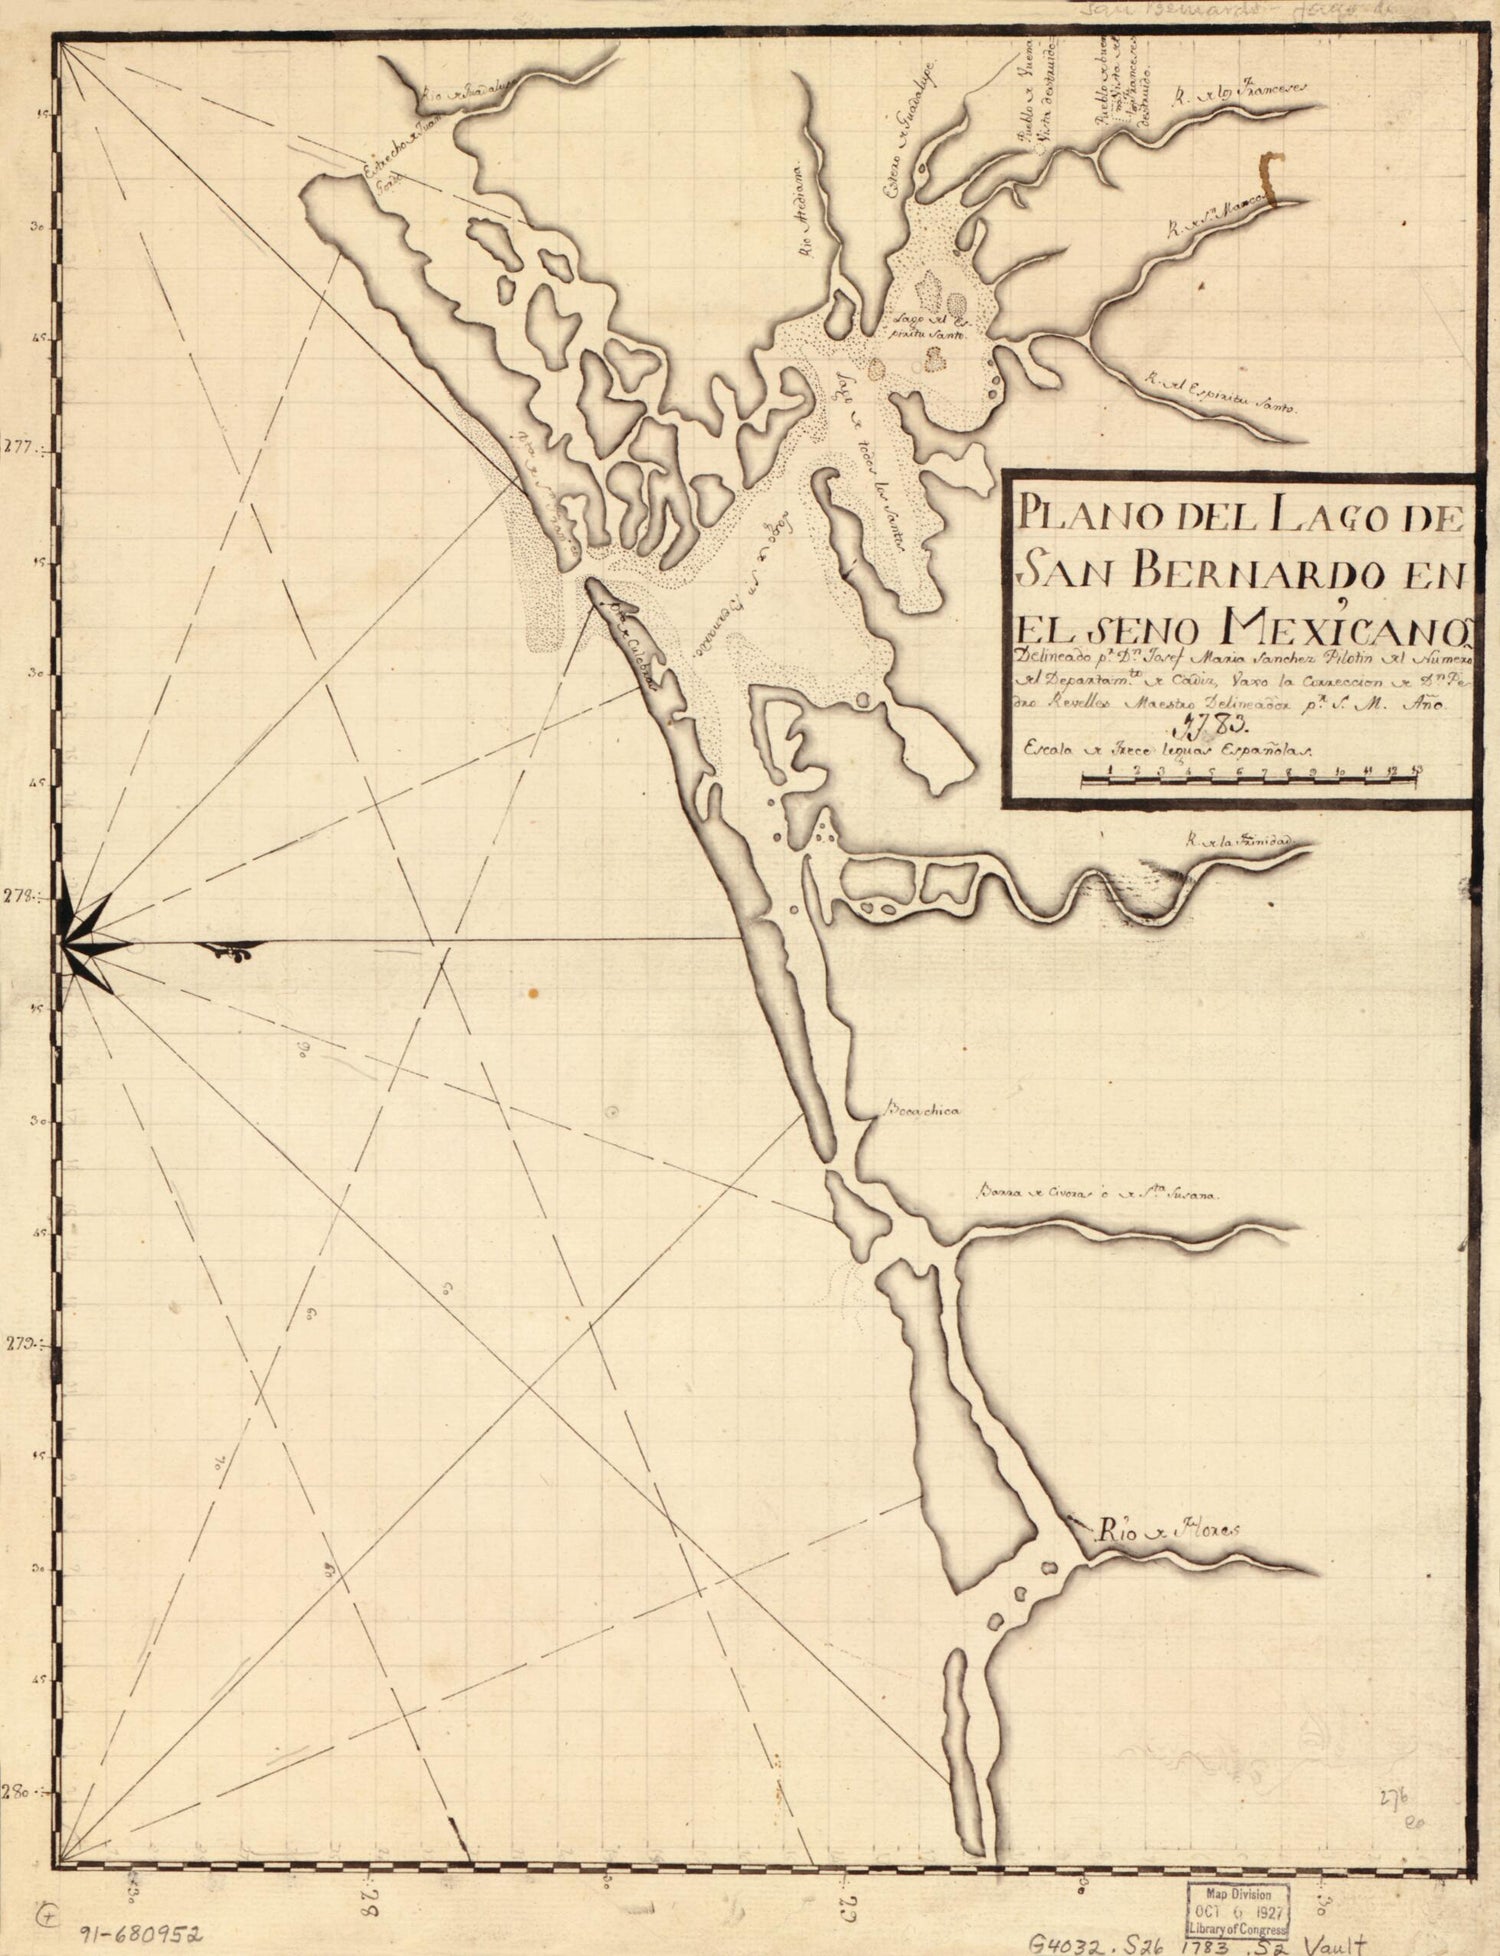 This old map of Plano Del Lago De San Bernardo En El Seno Mexicano from 1783 was created by Josef María Sánchez in 1783